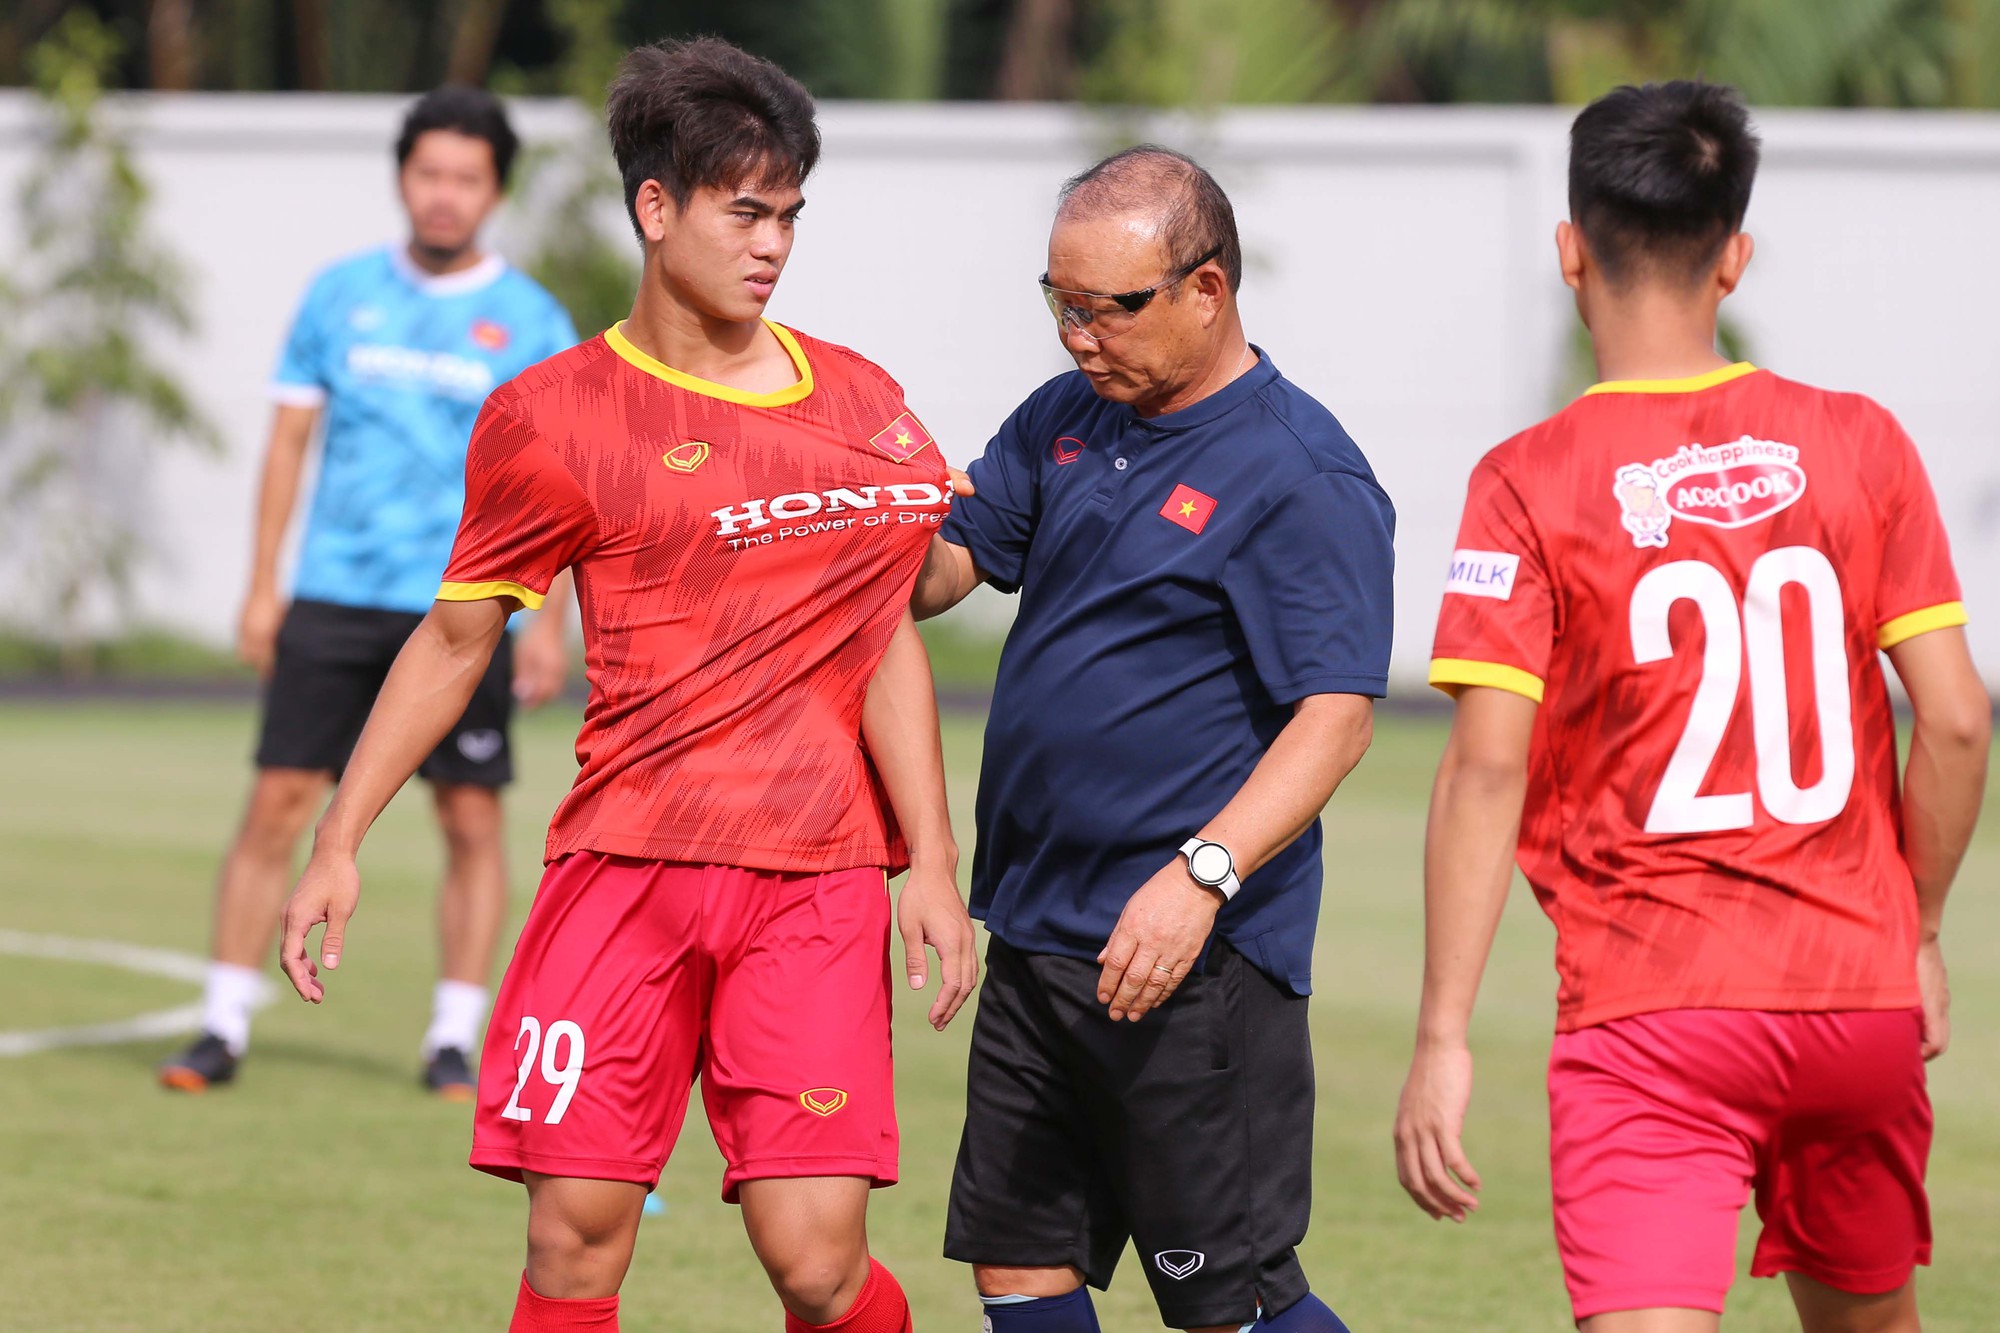 Hãy xem hình ảnh của anh trong buổi tập luyện trở lại và hy vọng anh sẽ còn đưa bóng đá Việt Nam đến những thành công mới ở tương lai.